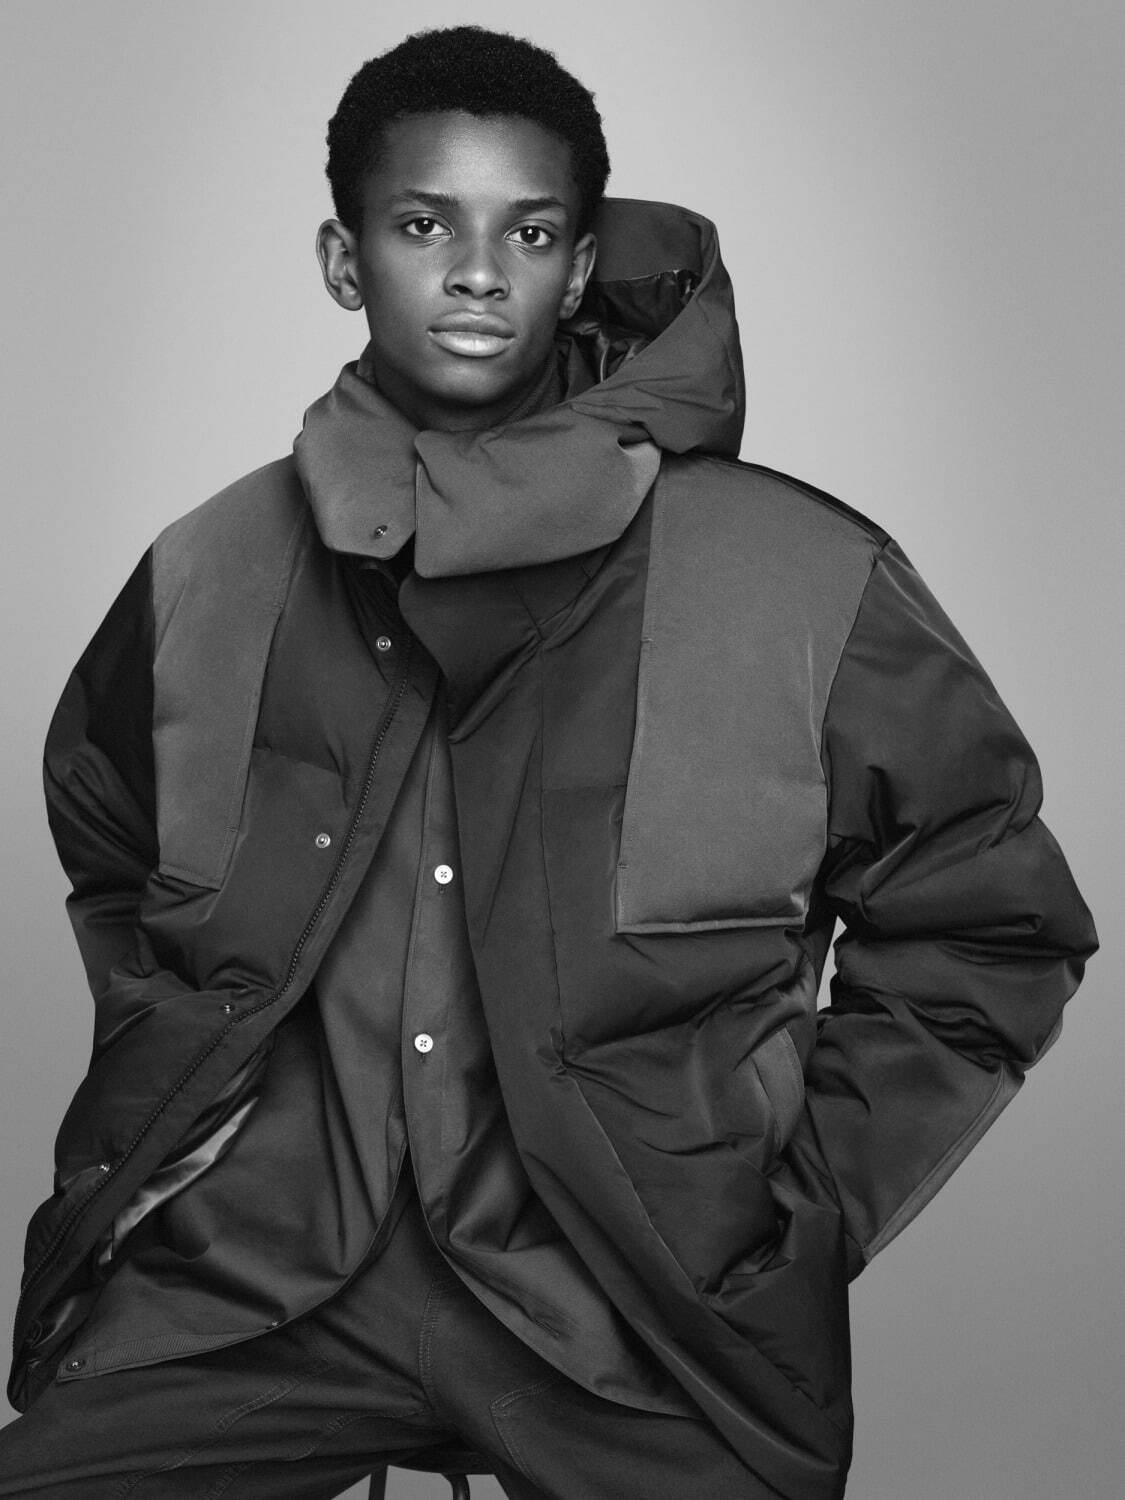 ユニクロ J 21年秋冬メンズ新作 デザイナー ジル サンダーによるダッフルコートやシャツ ファッションプレス